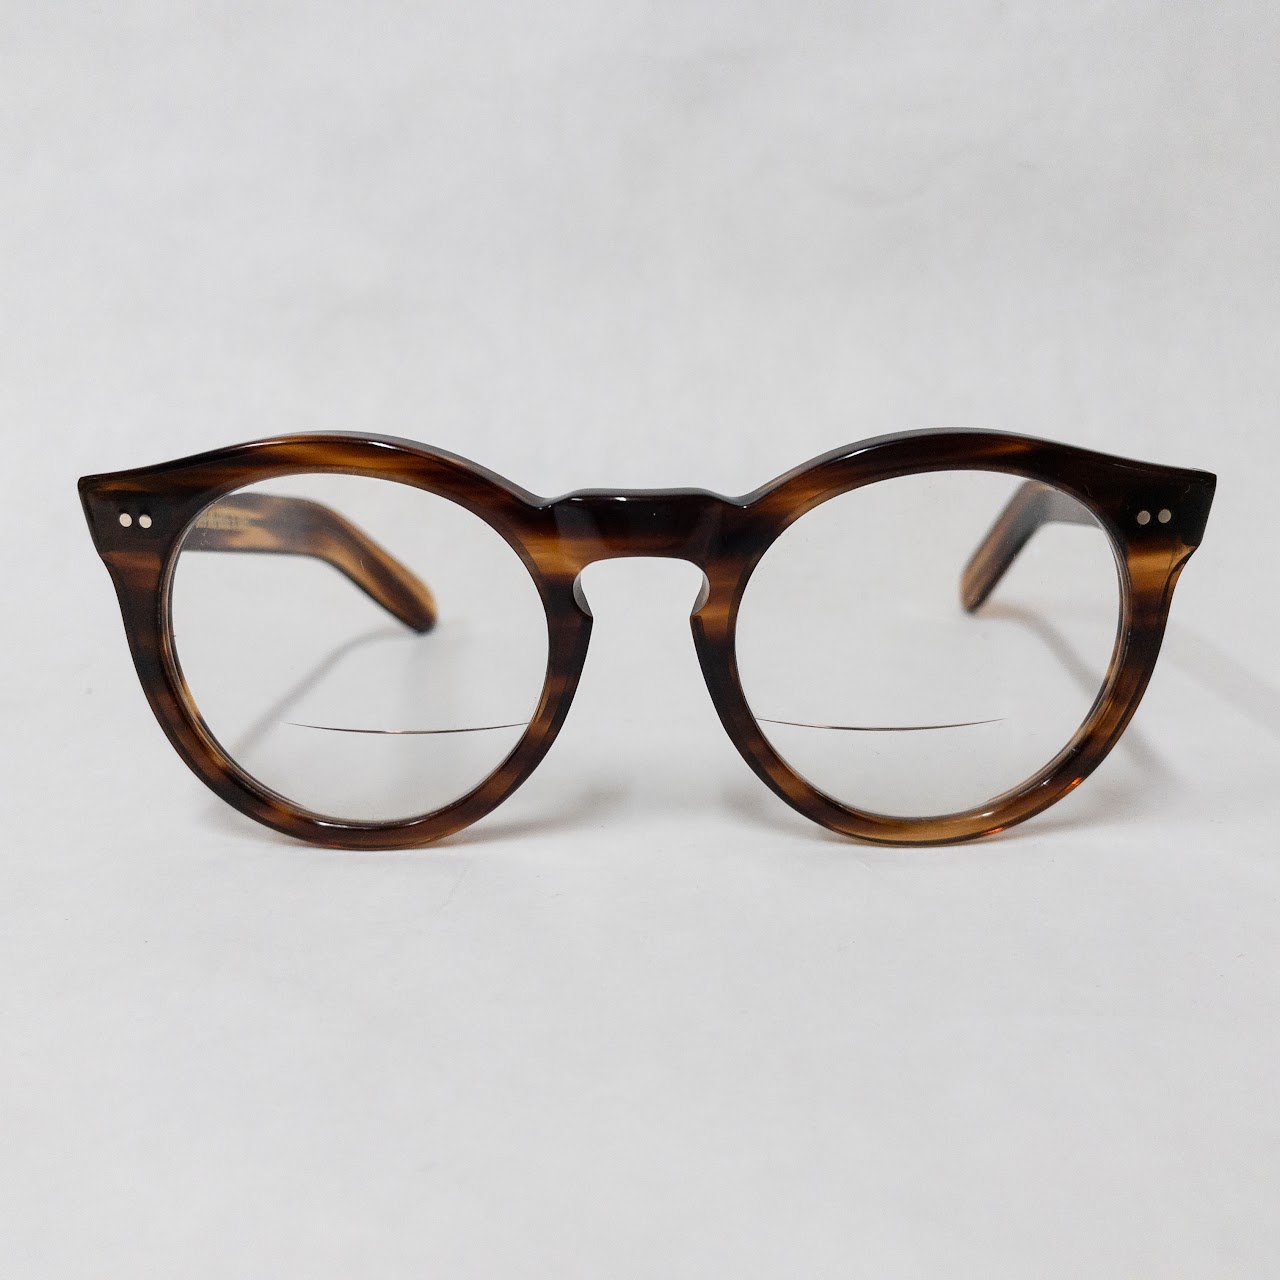 Cutler and Gross 'Tortoise' R/X Eyeglasses